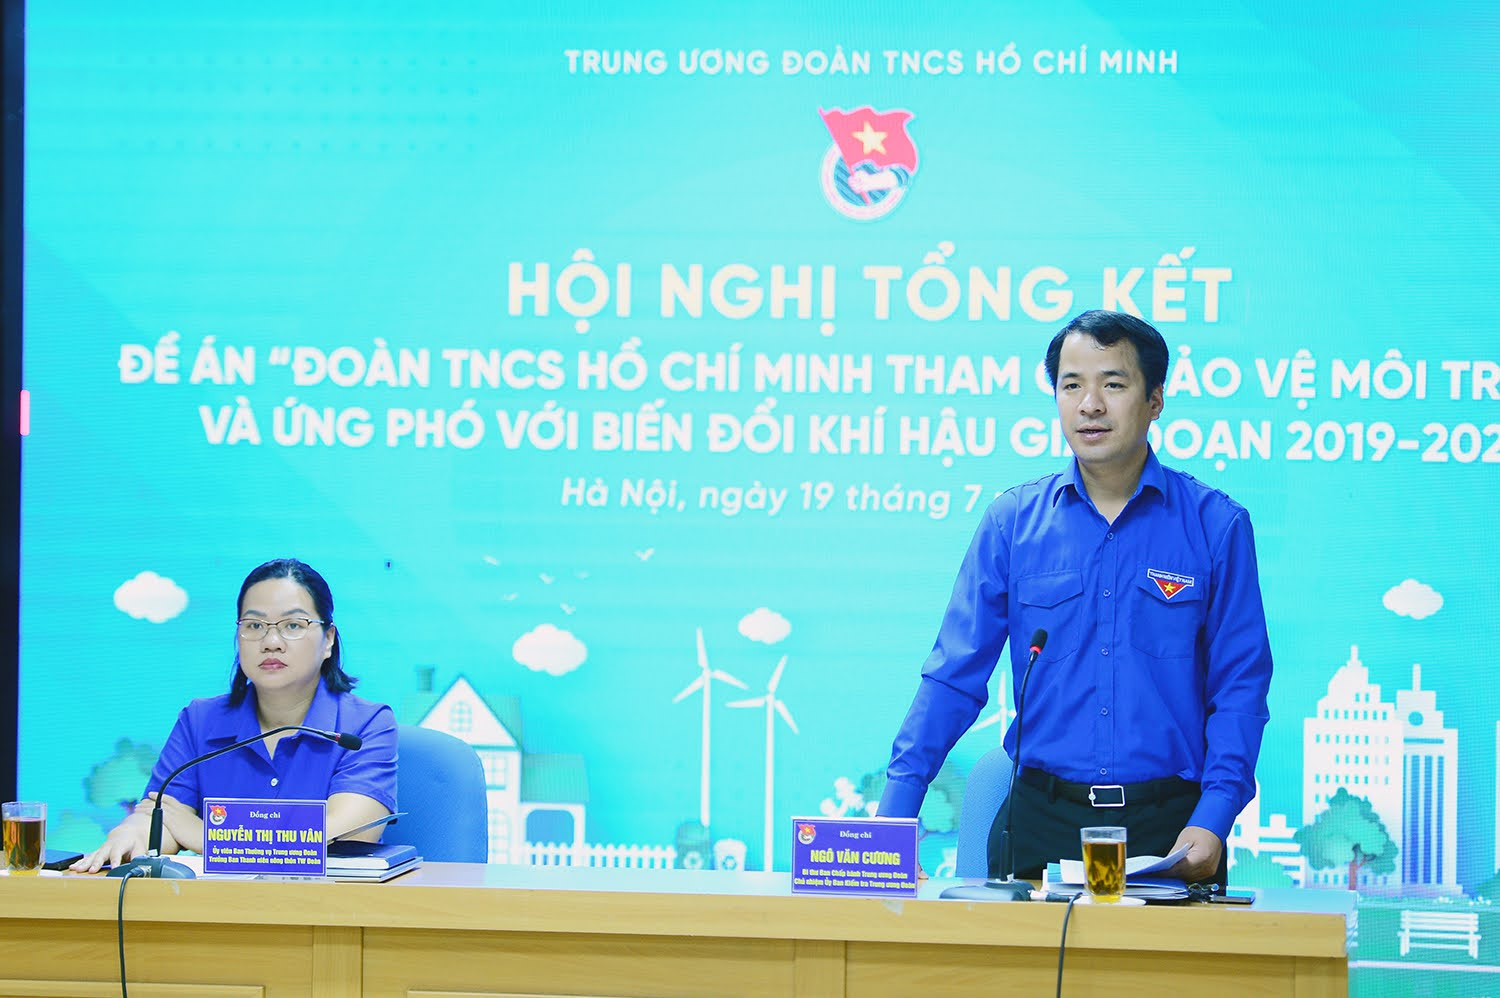 Ông Ngô Văn Cương, Bí thư BCH Trung ương Đoàn phát biểu tại hội nghị.